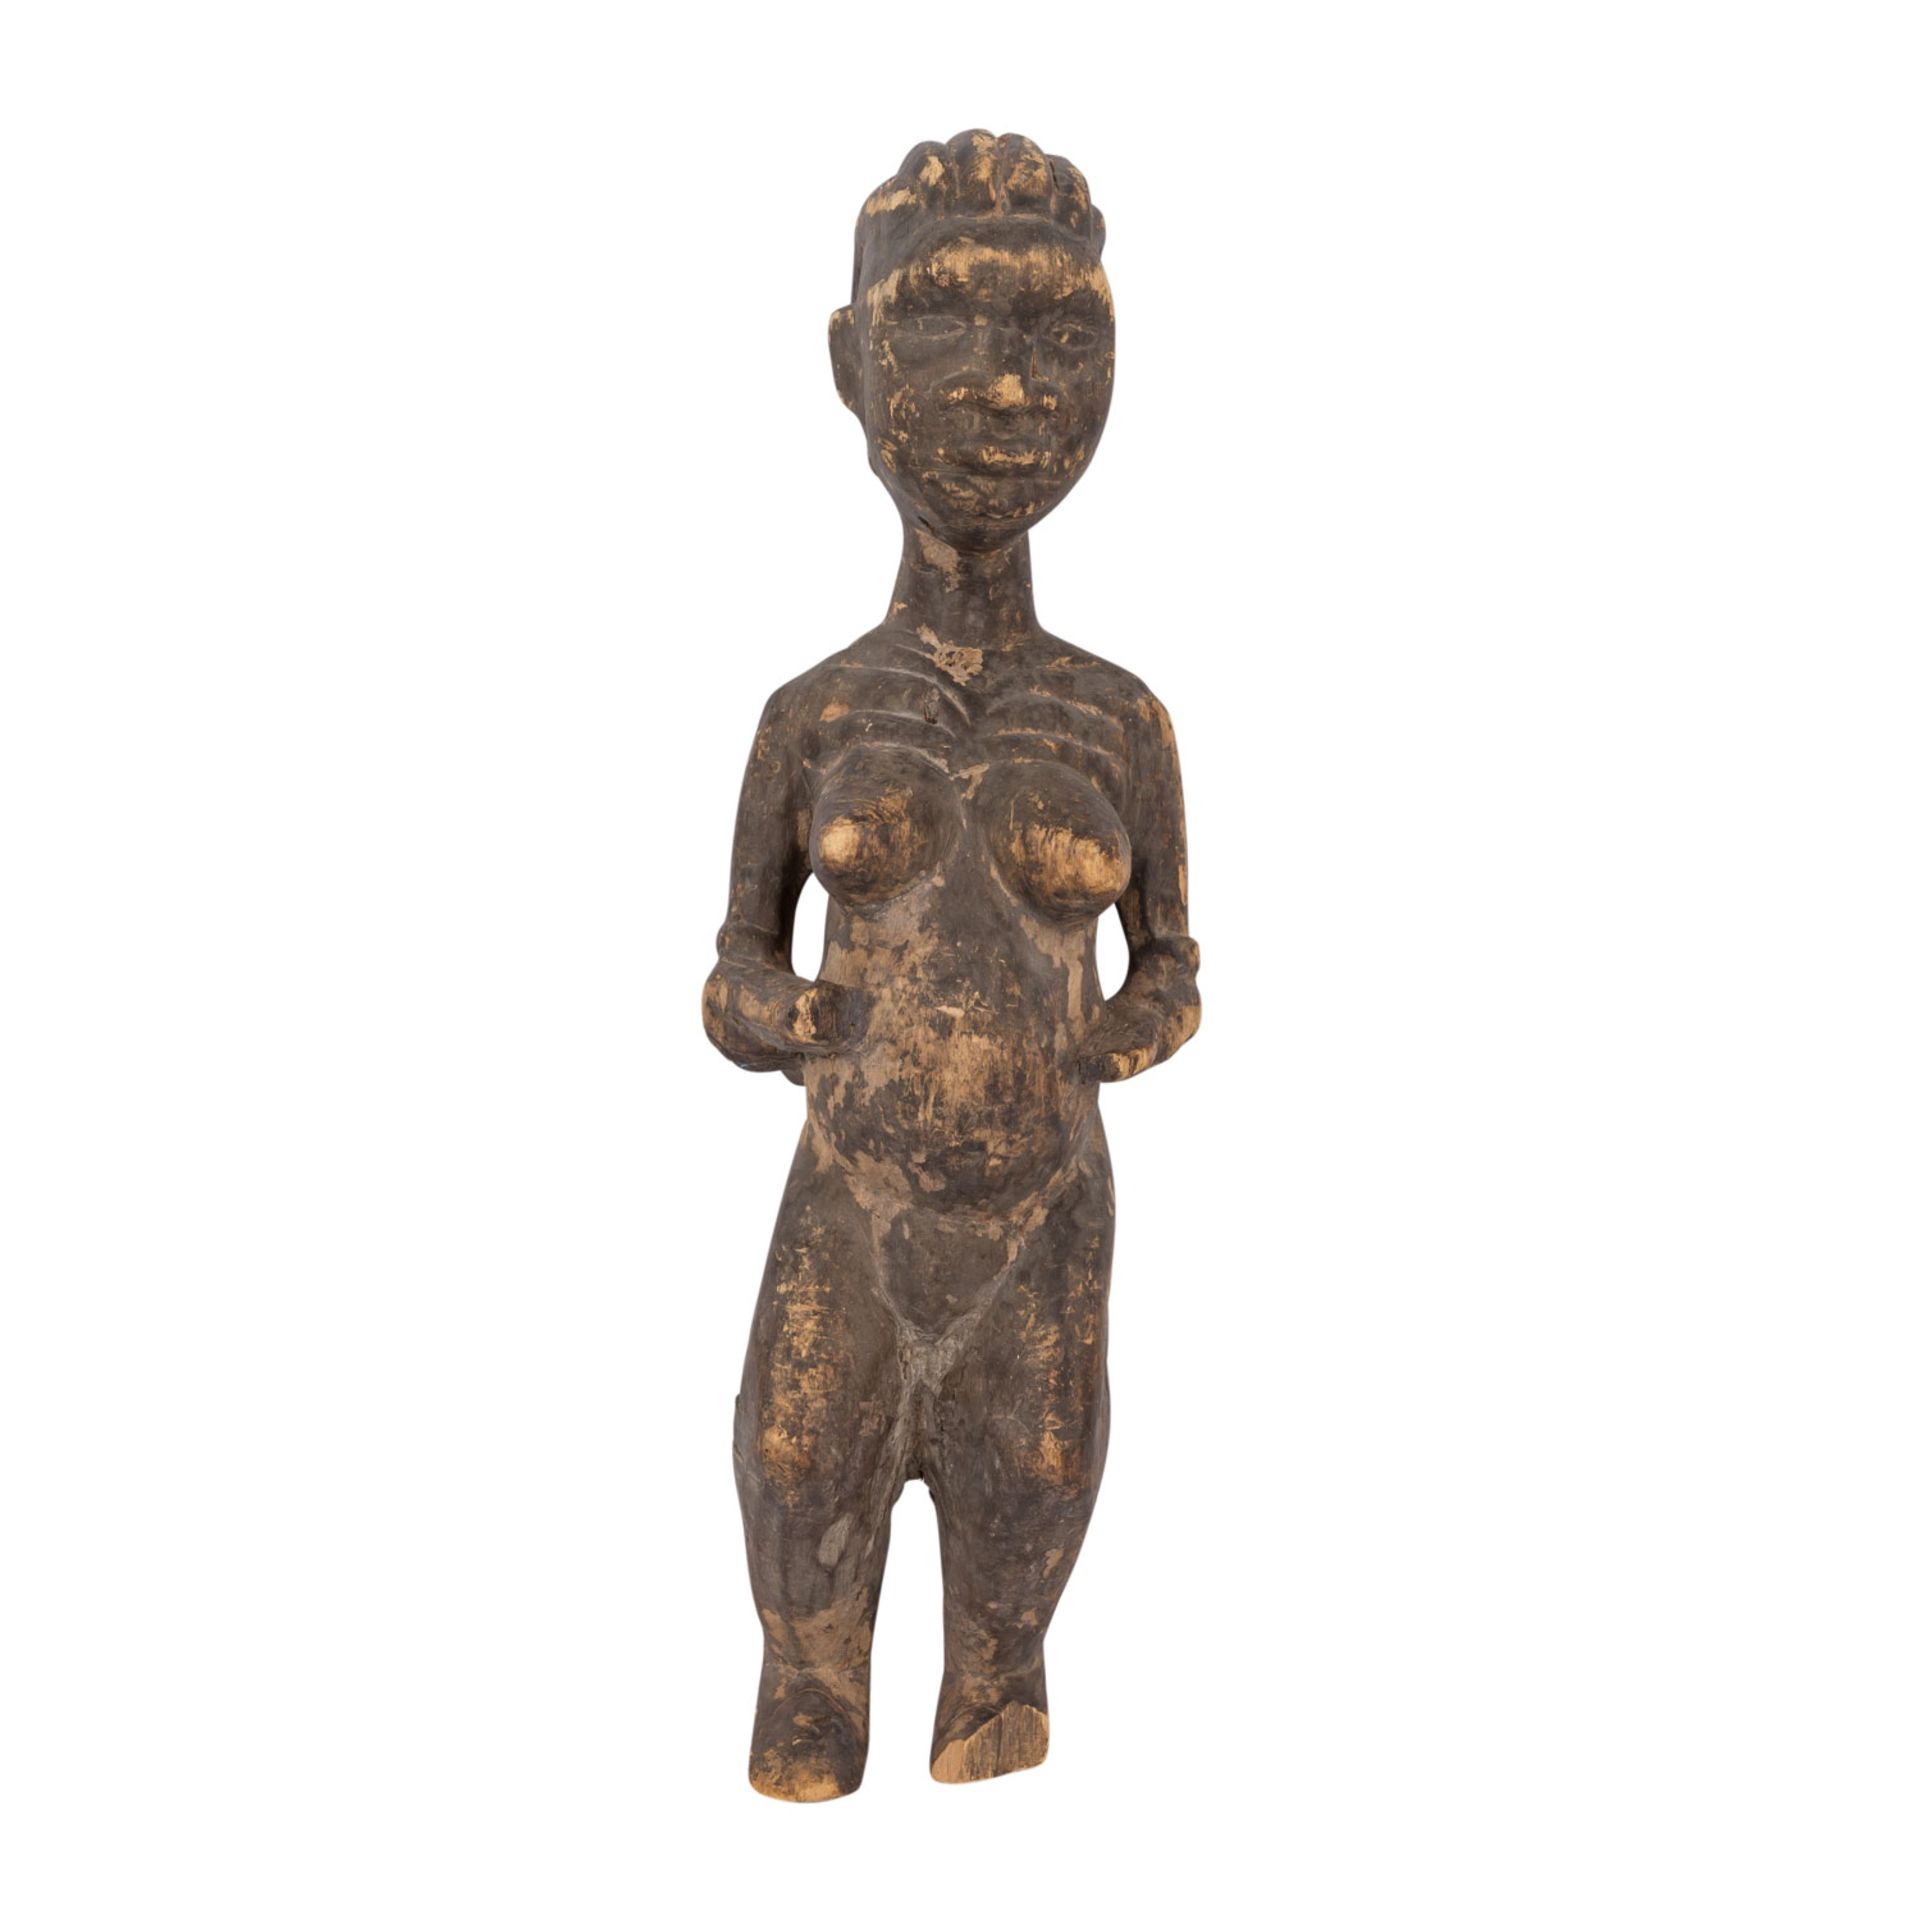 GESCHNITZTE WEIBLICHE FIGURWestafrika, weibliche Standfigur aus Holz, fein und detailreich